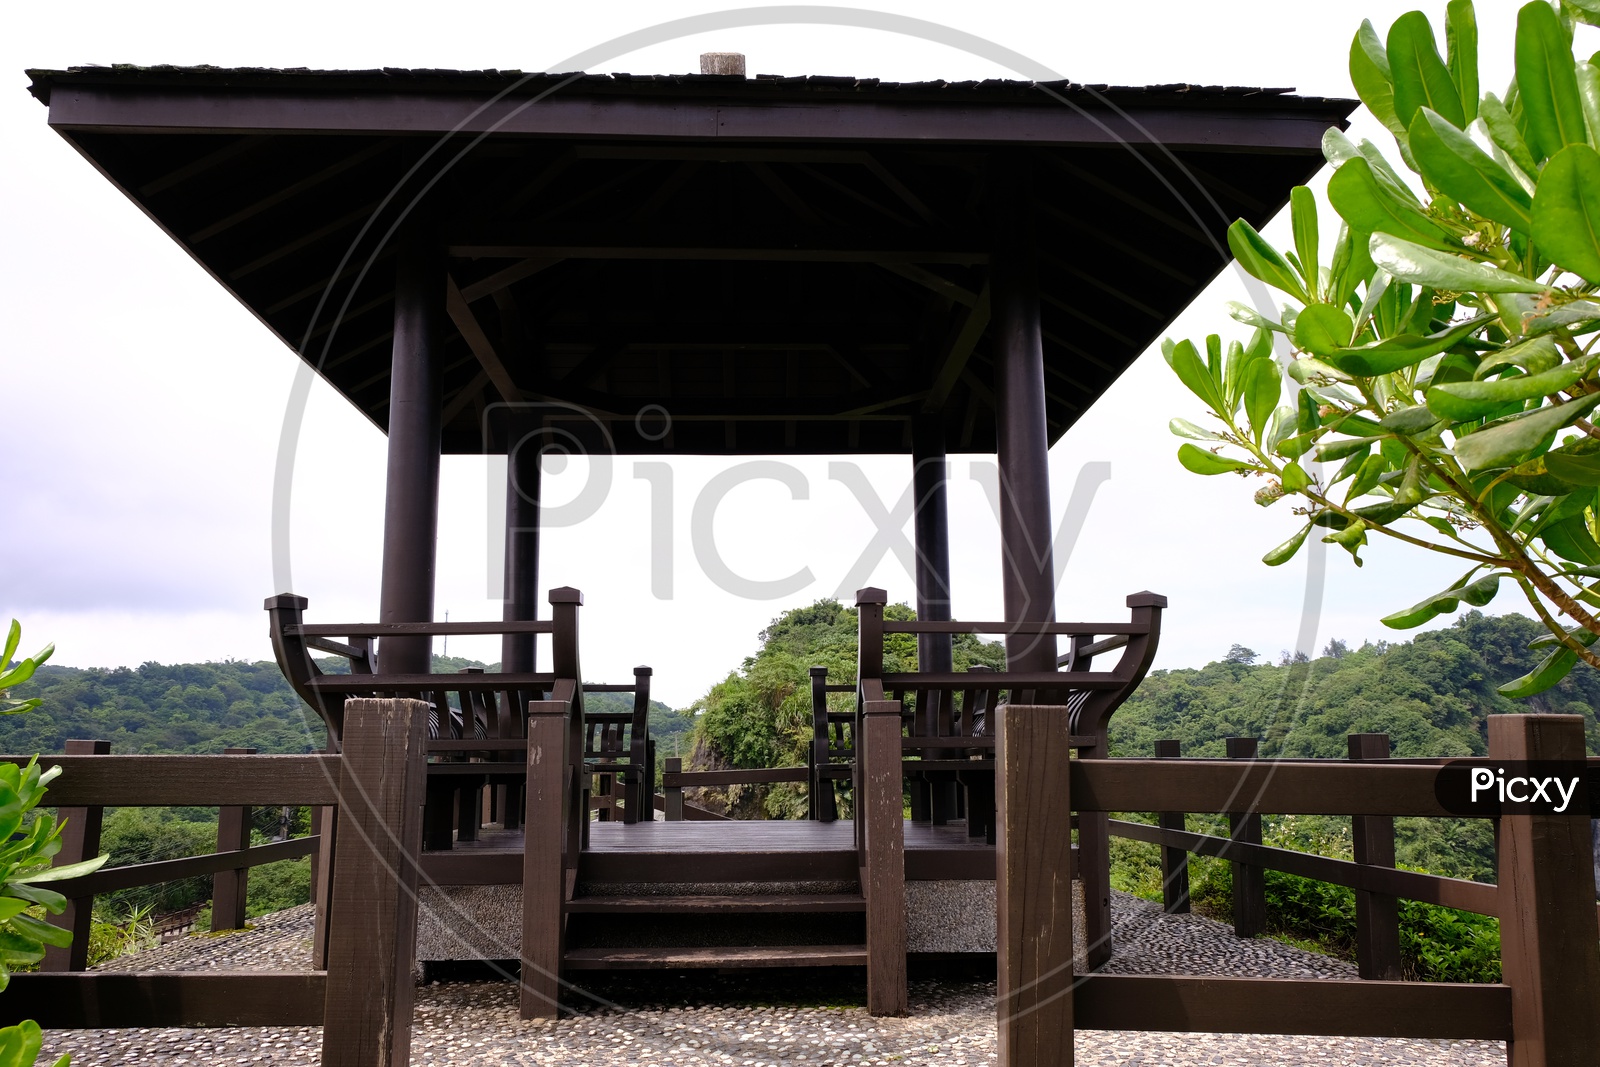 Wooden Seating Arrangement in Taroko National Park